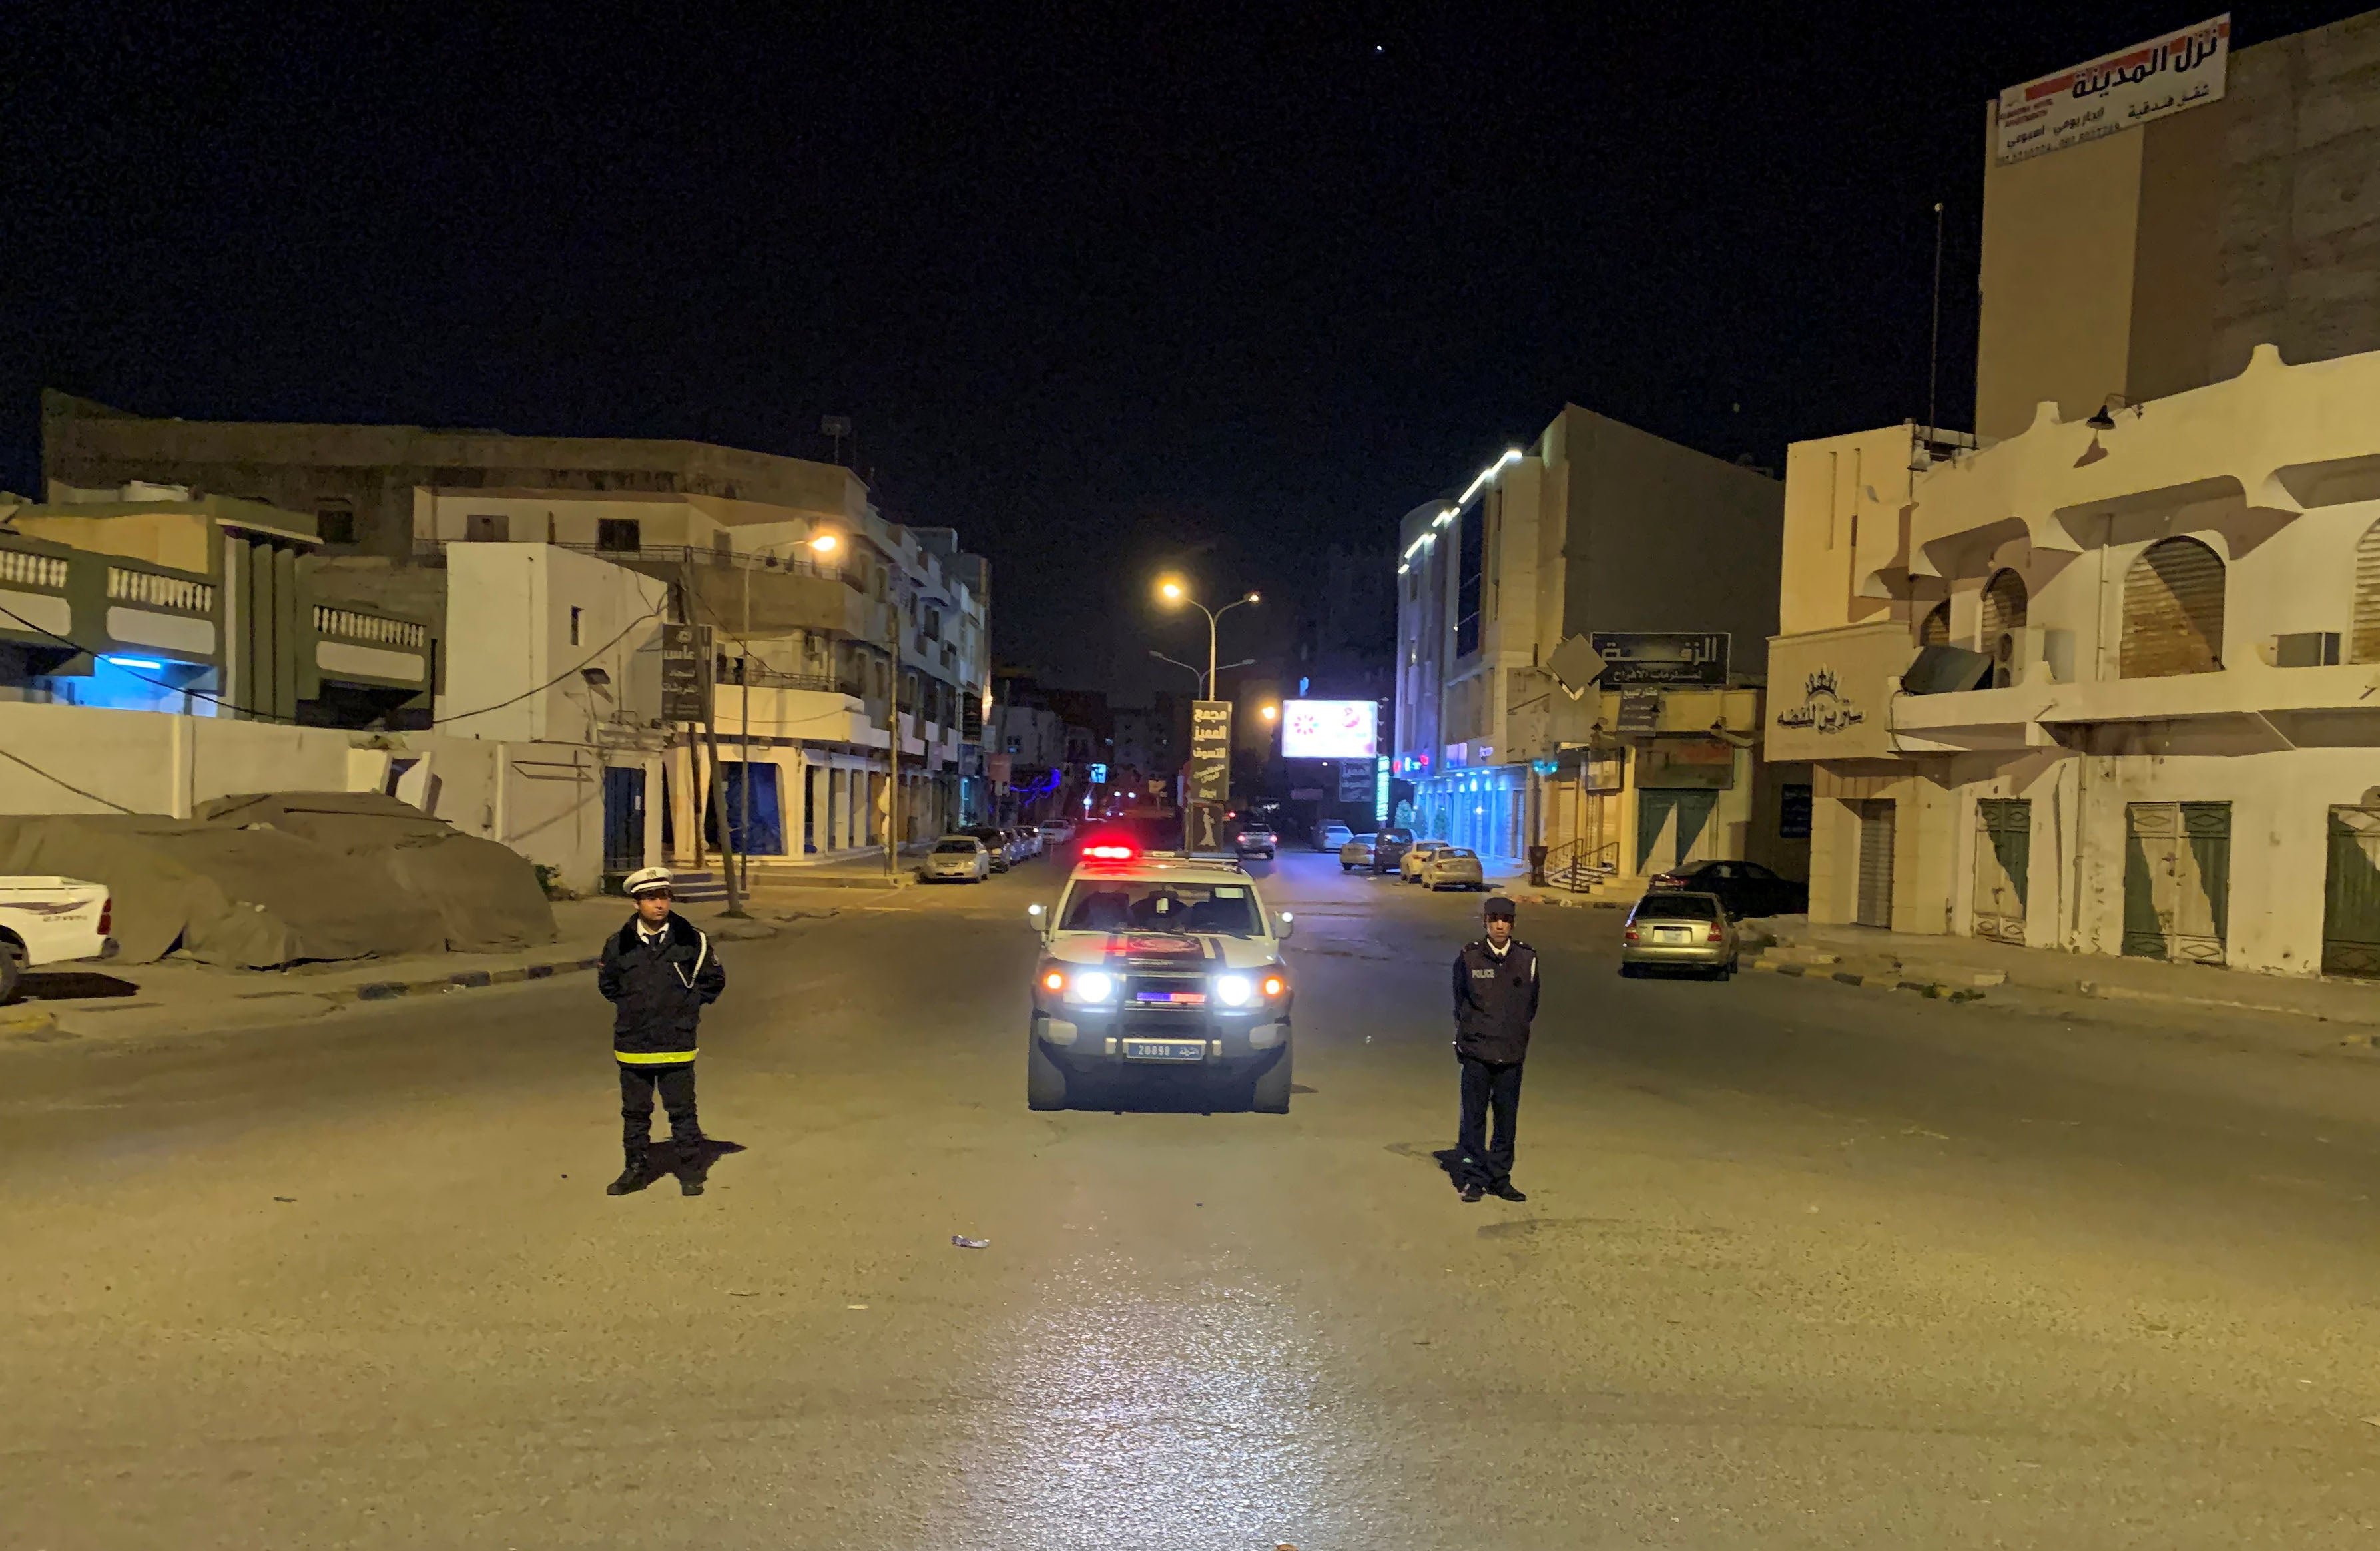 Deux policiers libyens bloquent l’accès à une rue de la ville côtière de Misrata, dans le nord-ouest du pays, le 22 mars 2020, lors de la période de couvre-feu décrété pour endiguer la propagation de la pandémie COVID-19.